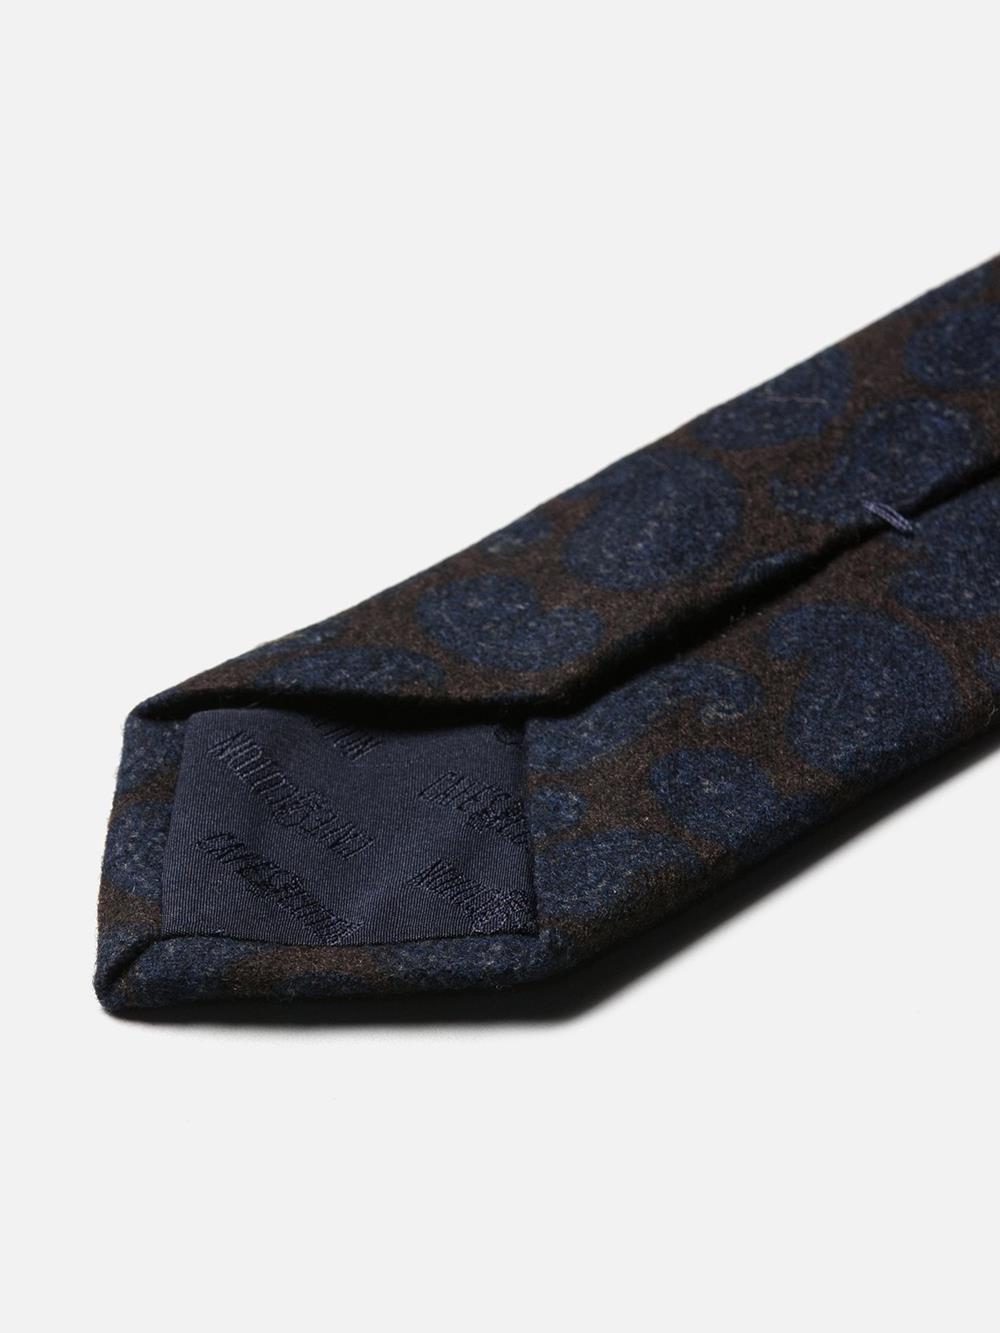 Krawatte aus Wolle und Seide in Braun mit Paisley-Muster